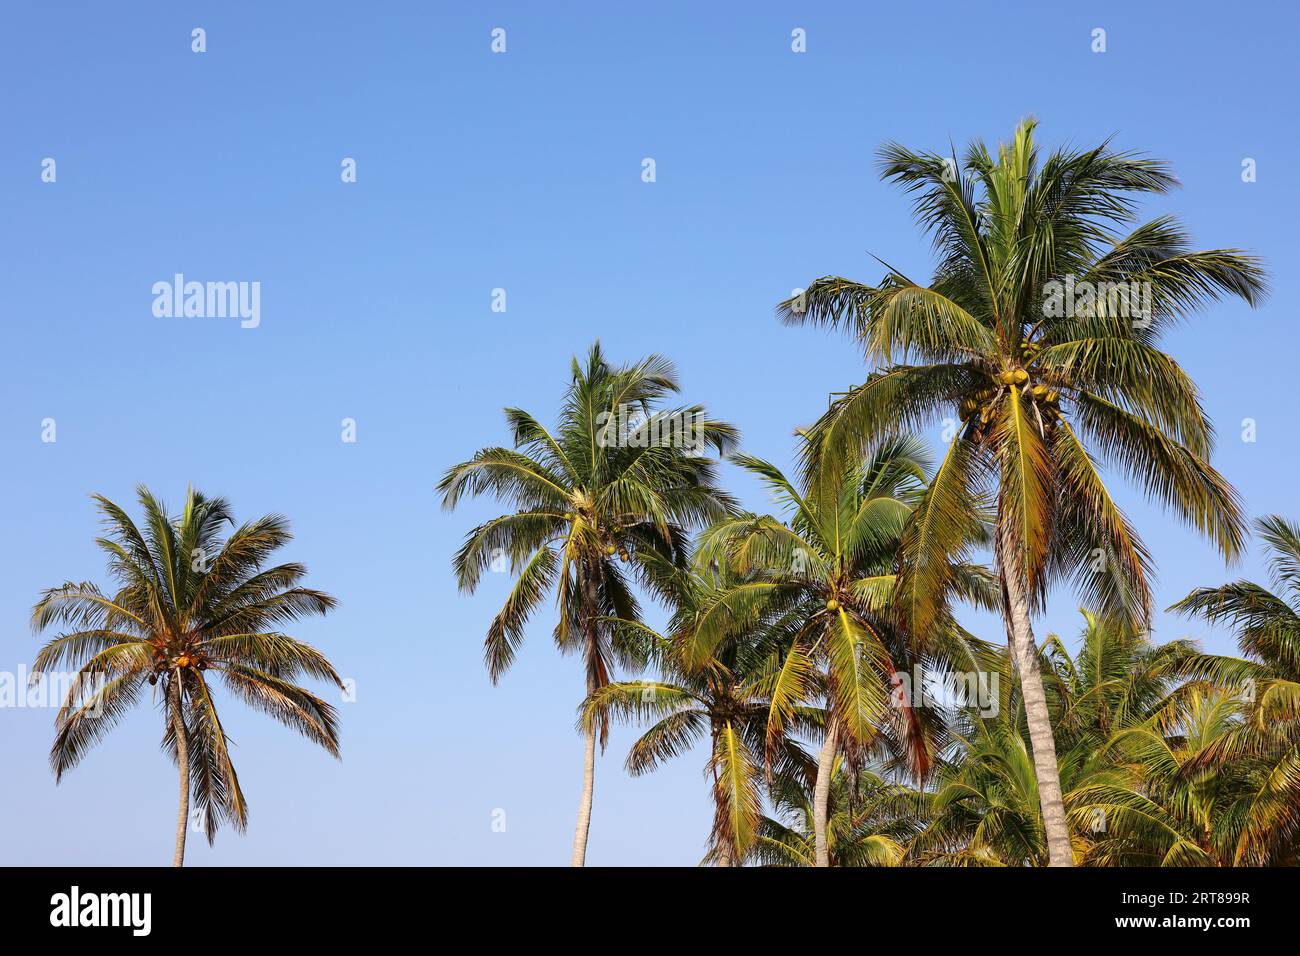 Kokospalmen auf blauem Himmel Hintergrund. Tropischer Strand, paradiesische Natur Stockfoto